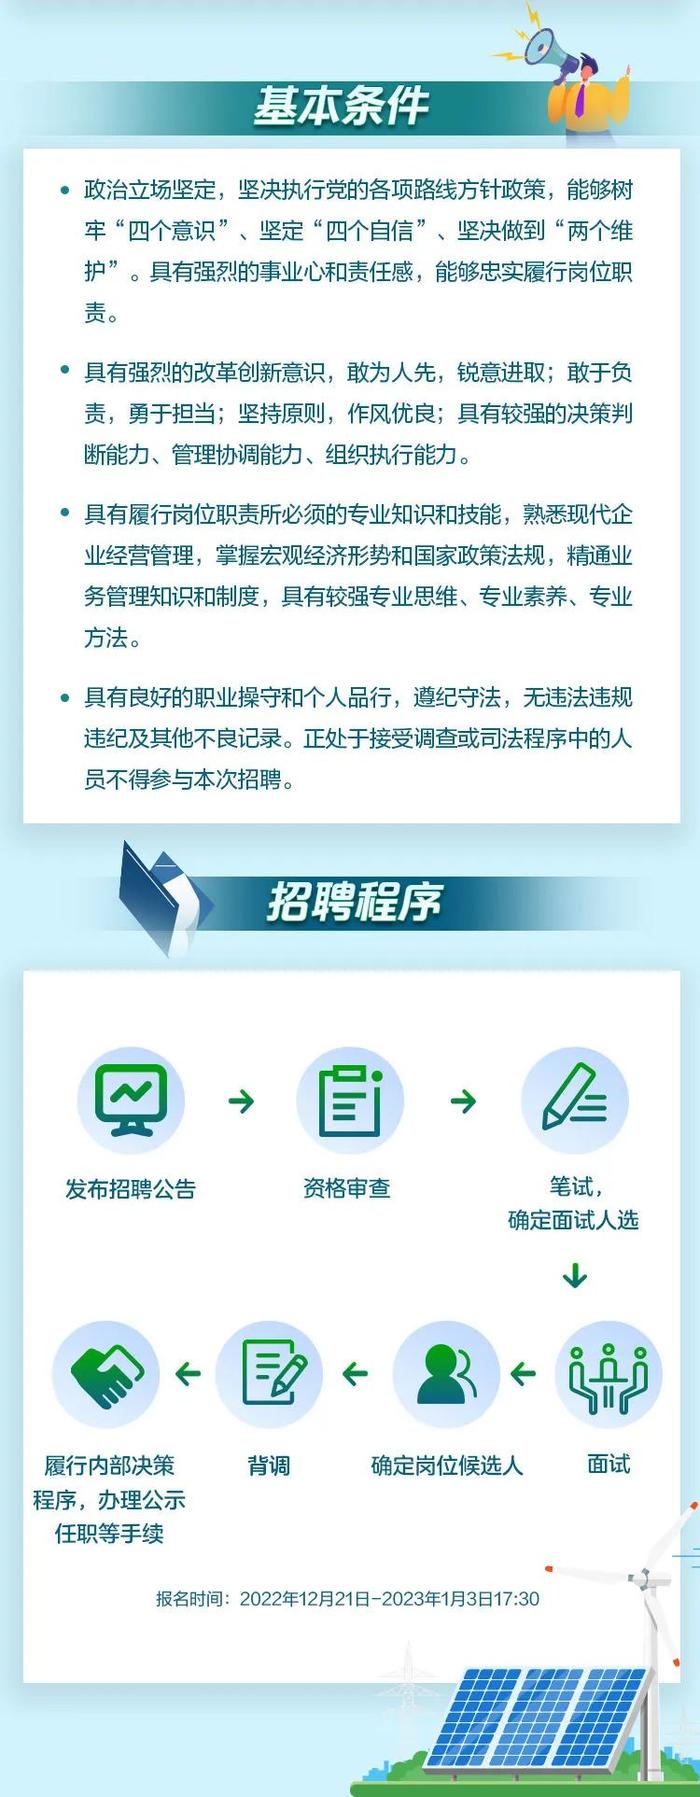 【社招】中国电气装备在沪子企业招聘公告